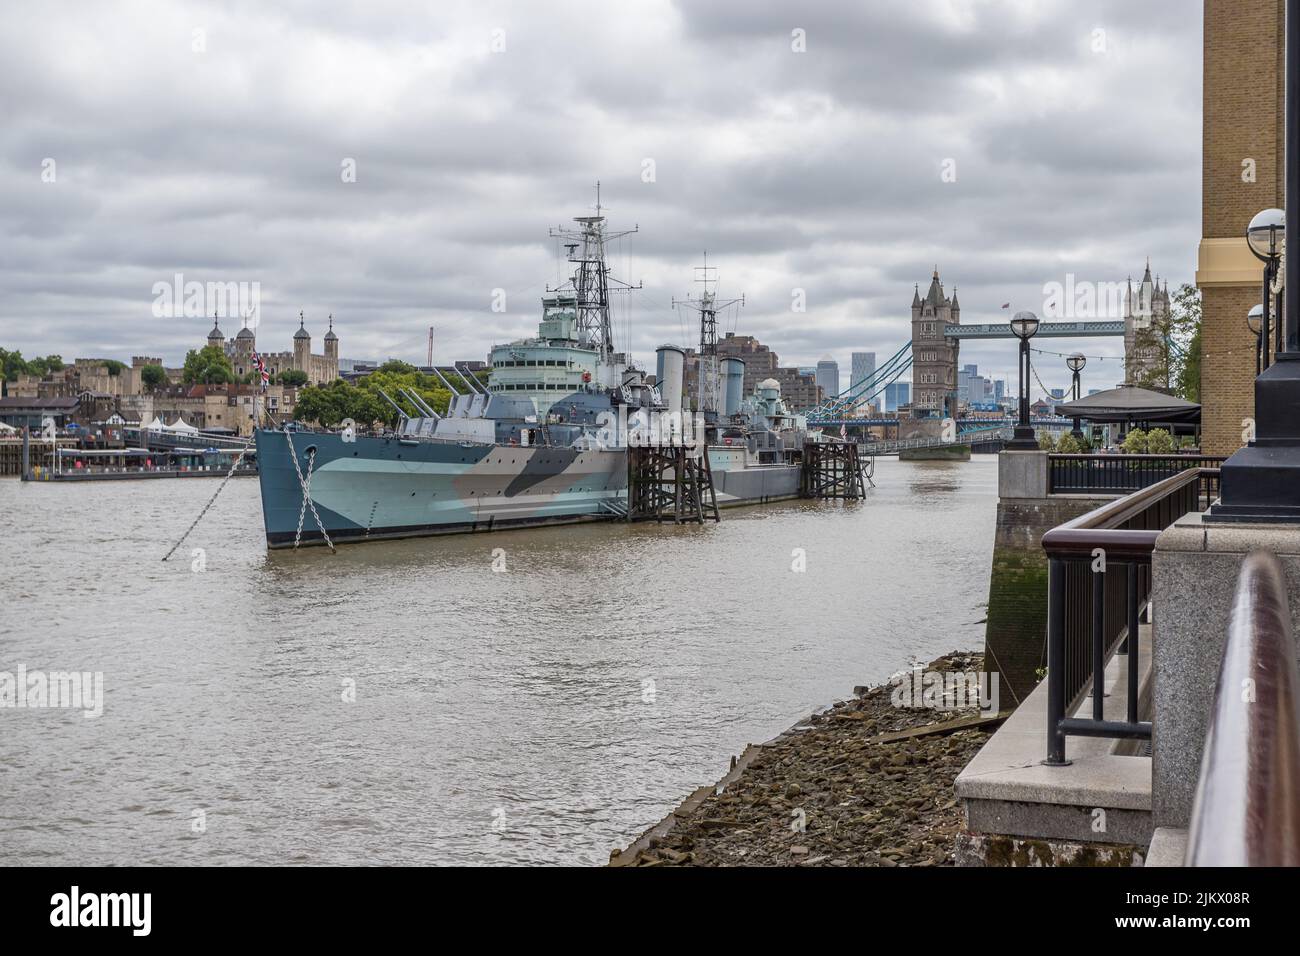 HMS Belfast catturato dalla Queens Walk a Londra nell'agosto 2022. La Torre di Londra, il Tower Bridge e Canary Wharf possono essere visti dietro la barca mu Foto Stock